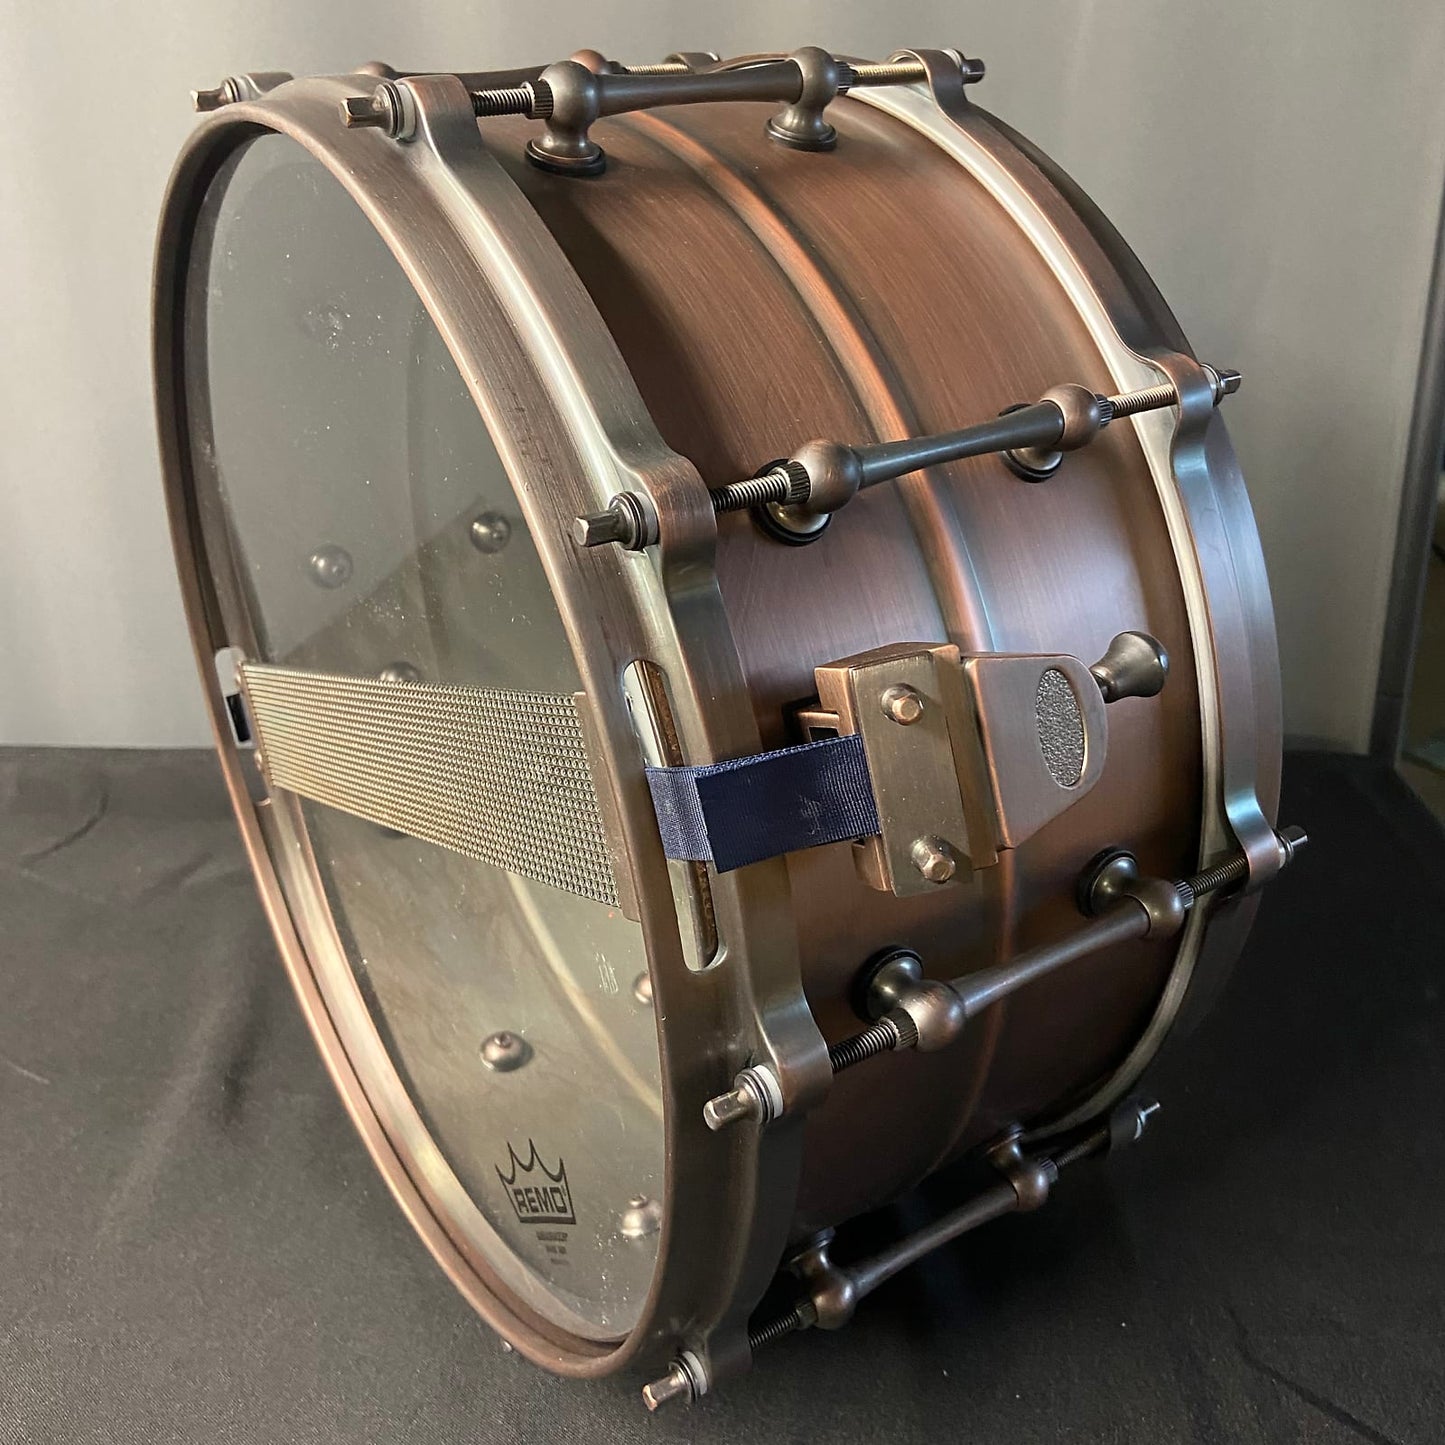 All Copper Snare Drum